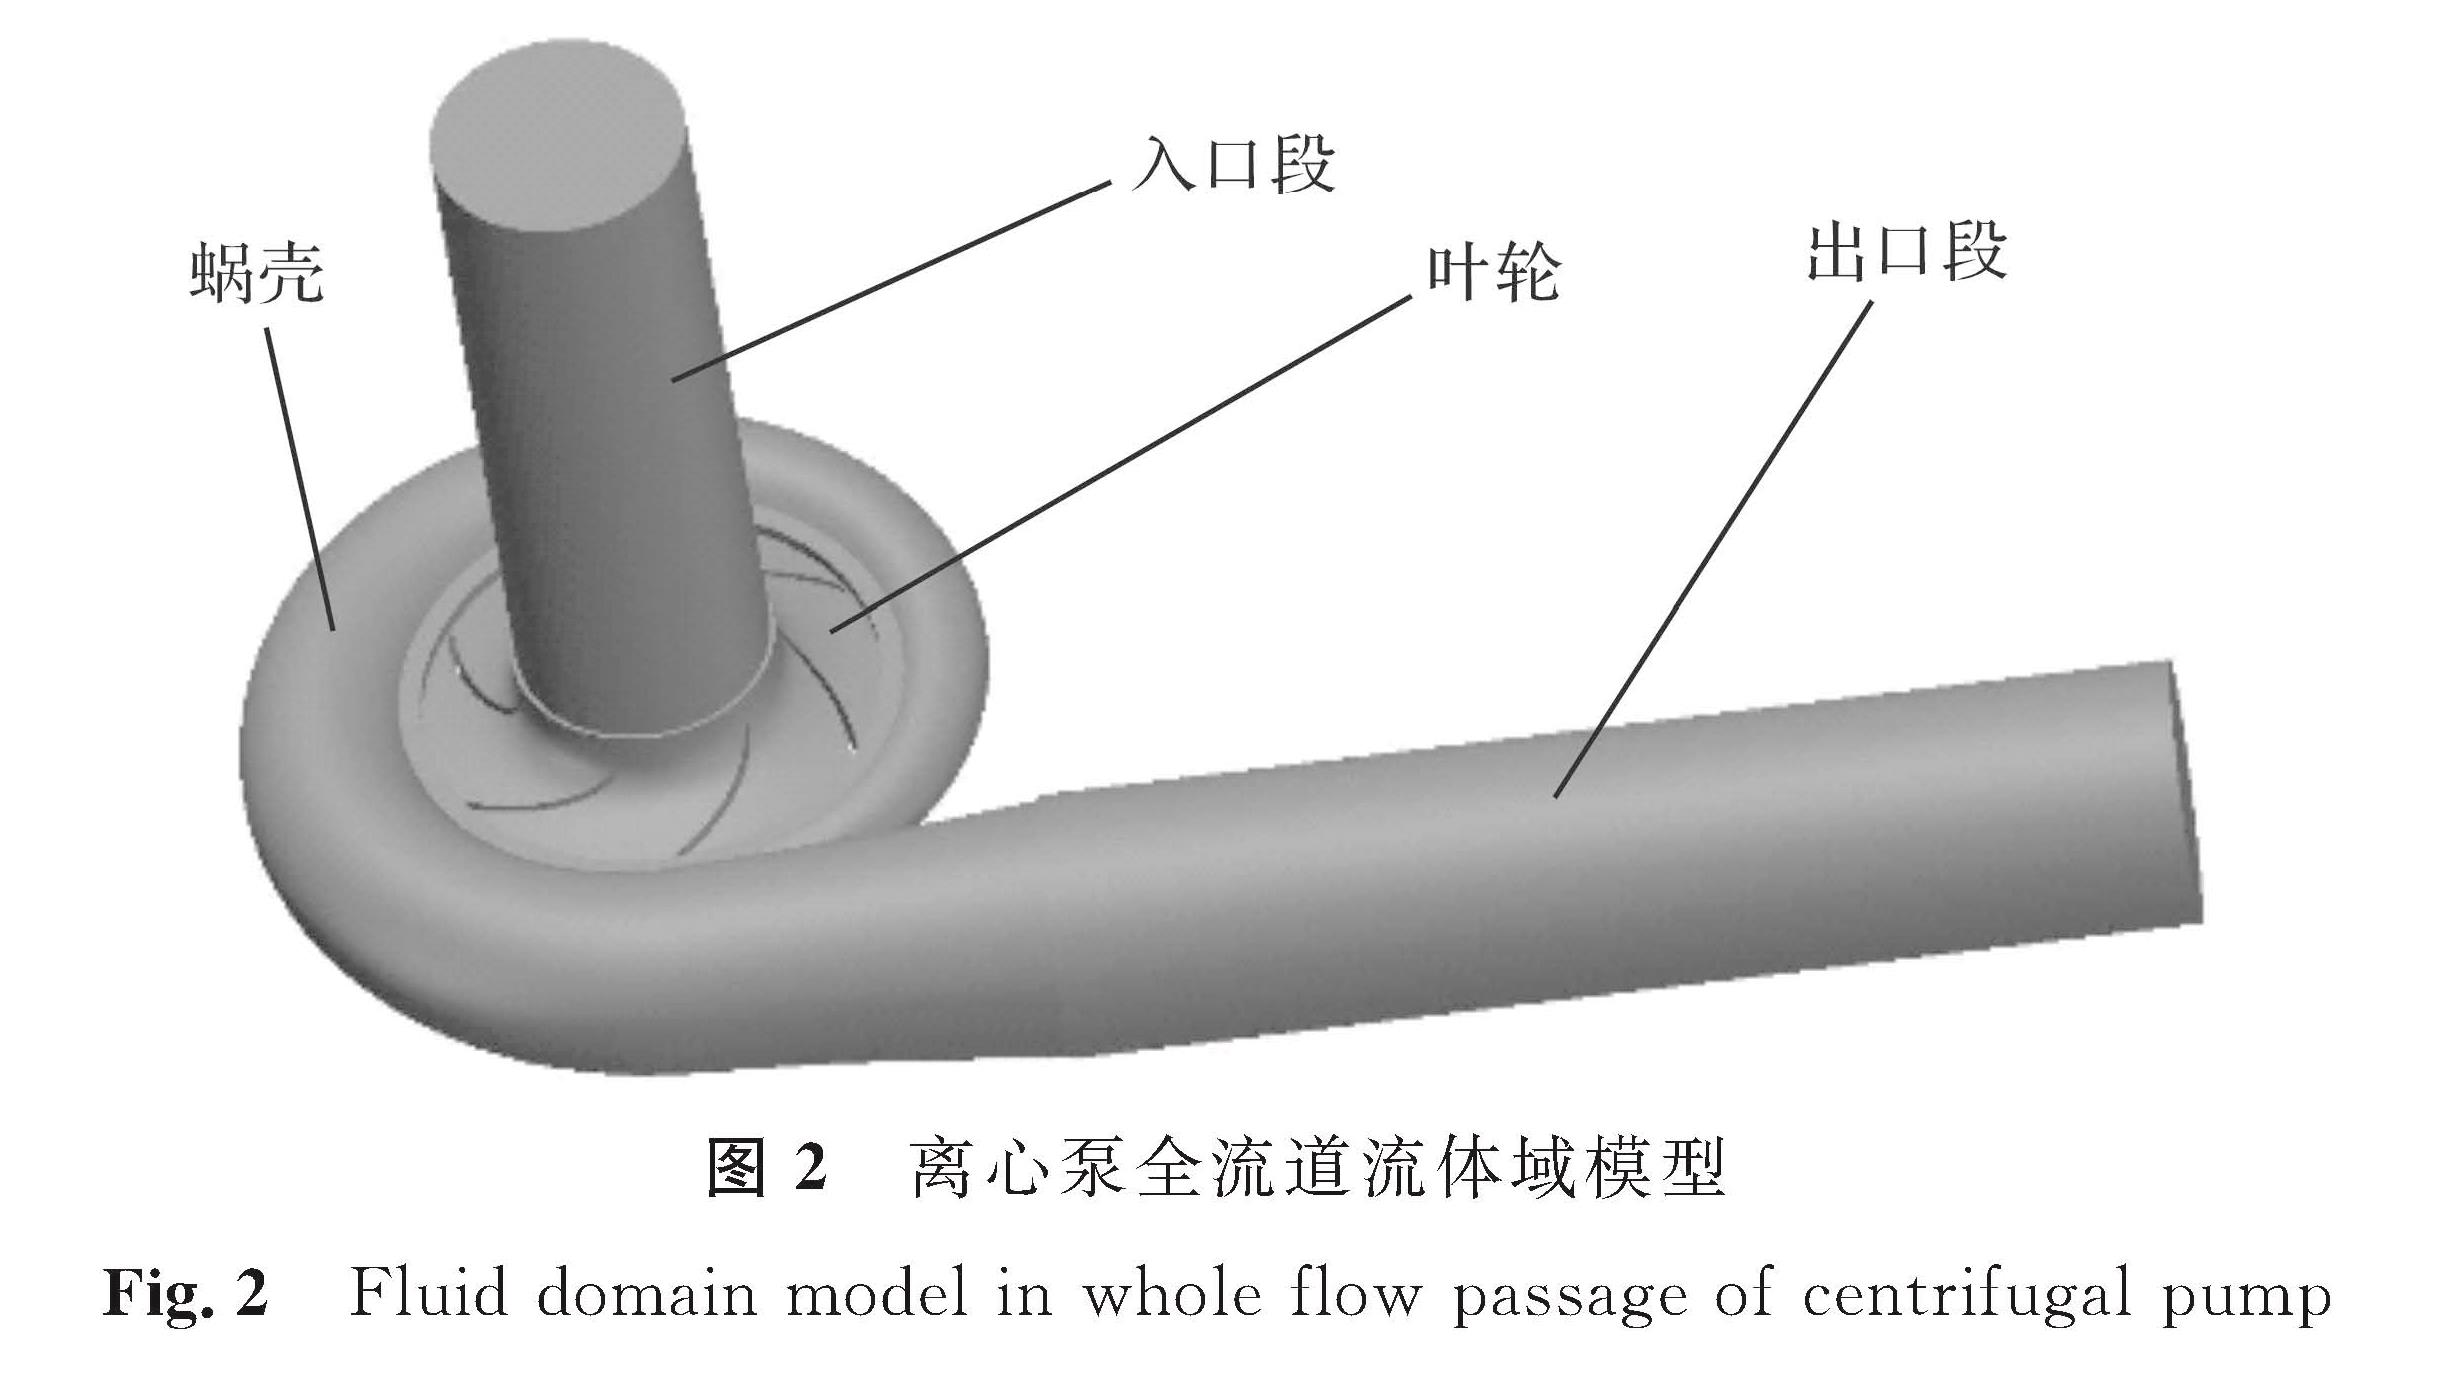 图2 离心泵全流道流体域模型<br/>Fig.2 Fluid domain model in whole flow passage of centrifugal pump